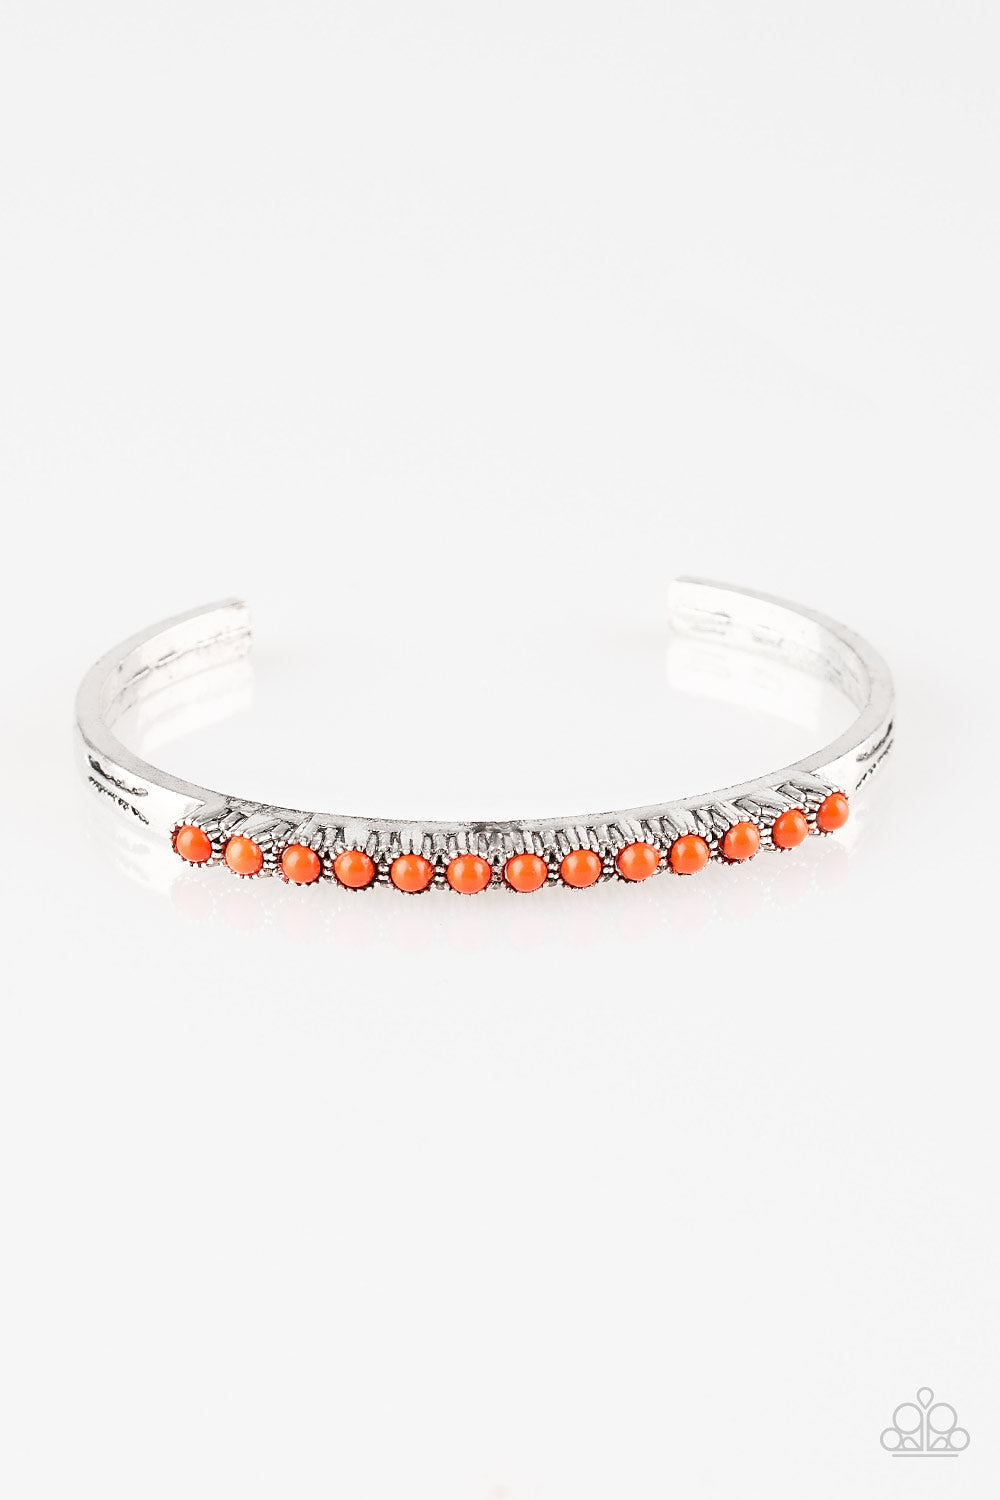 Paparazzi New Age Traveler - Orange Beads - Silver Cuff Bracelet - $5 Jewelry With Ashley Swint